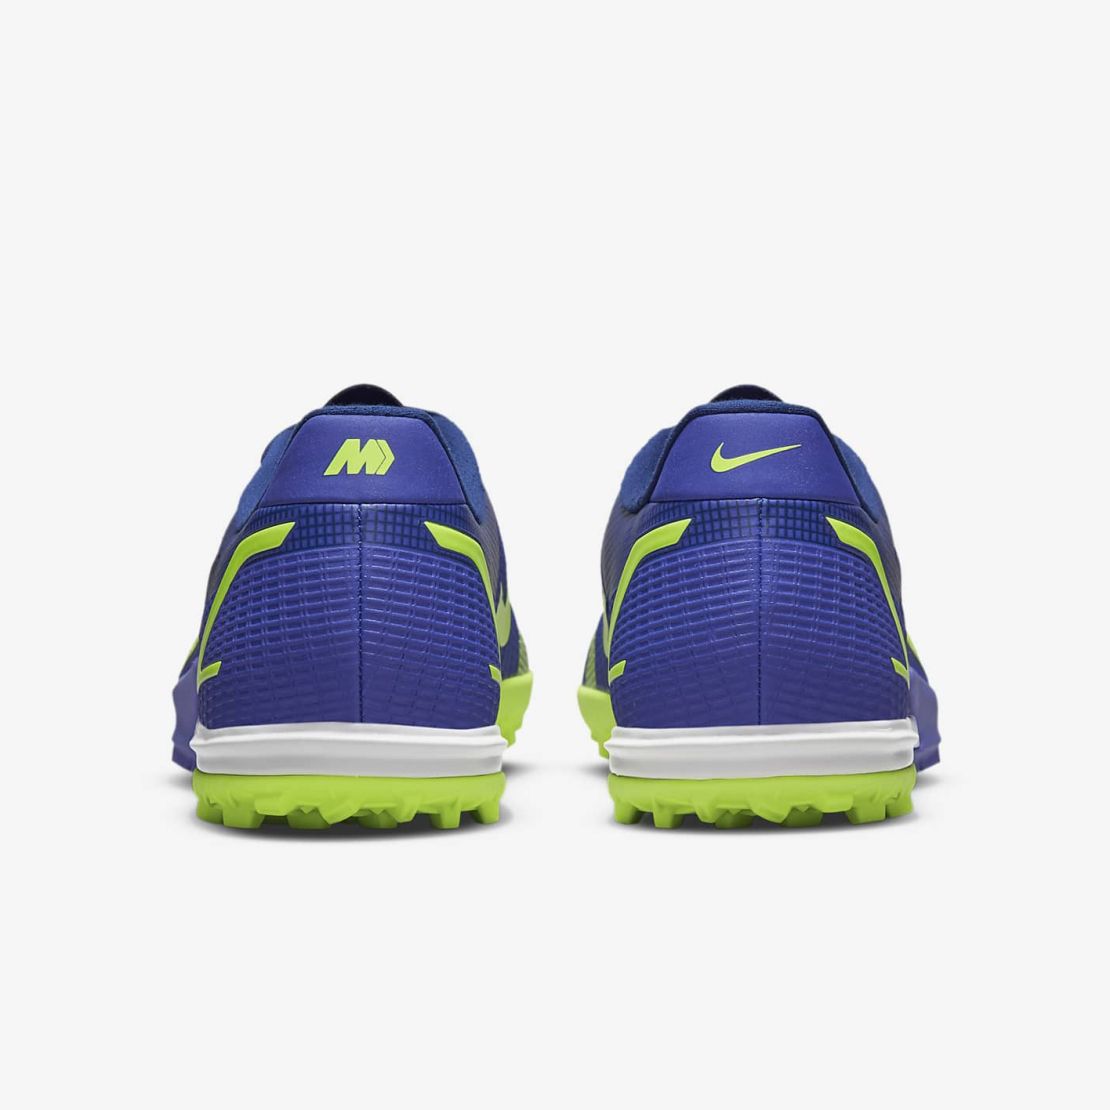 נעלי נייק קטרגל לגברים | Nike Vapor 14 ACADEMY TF